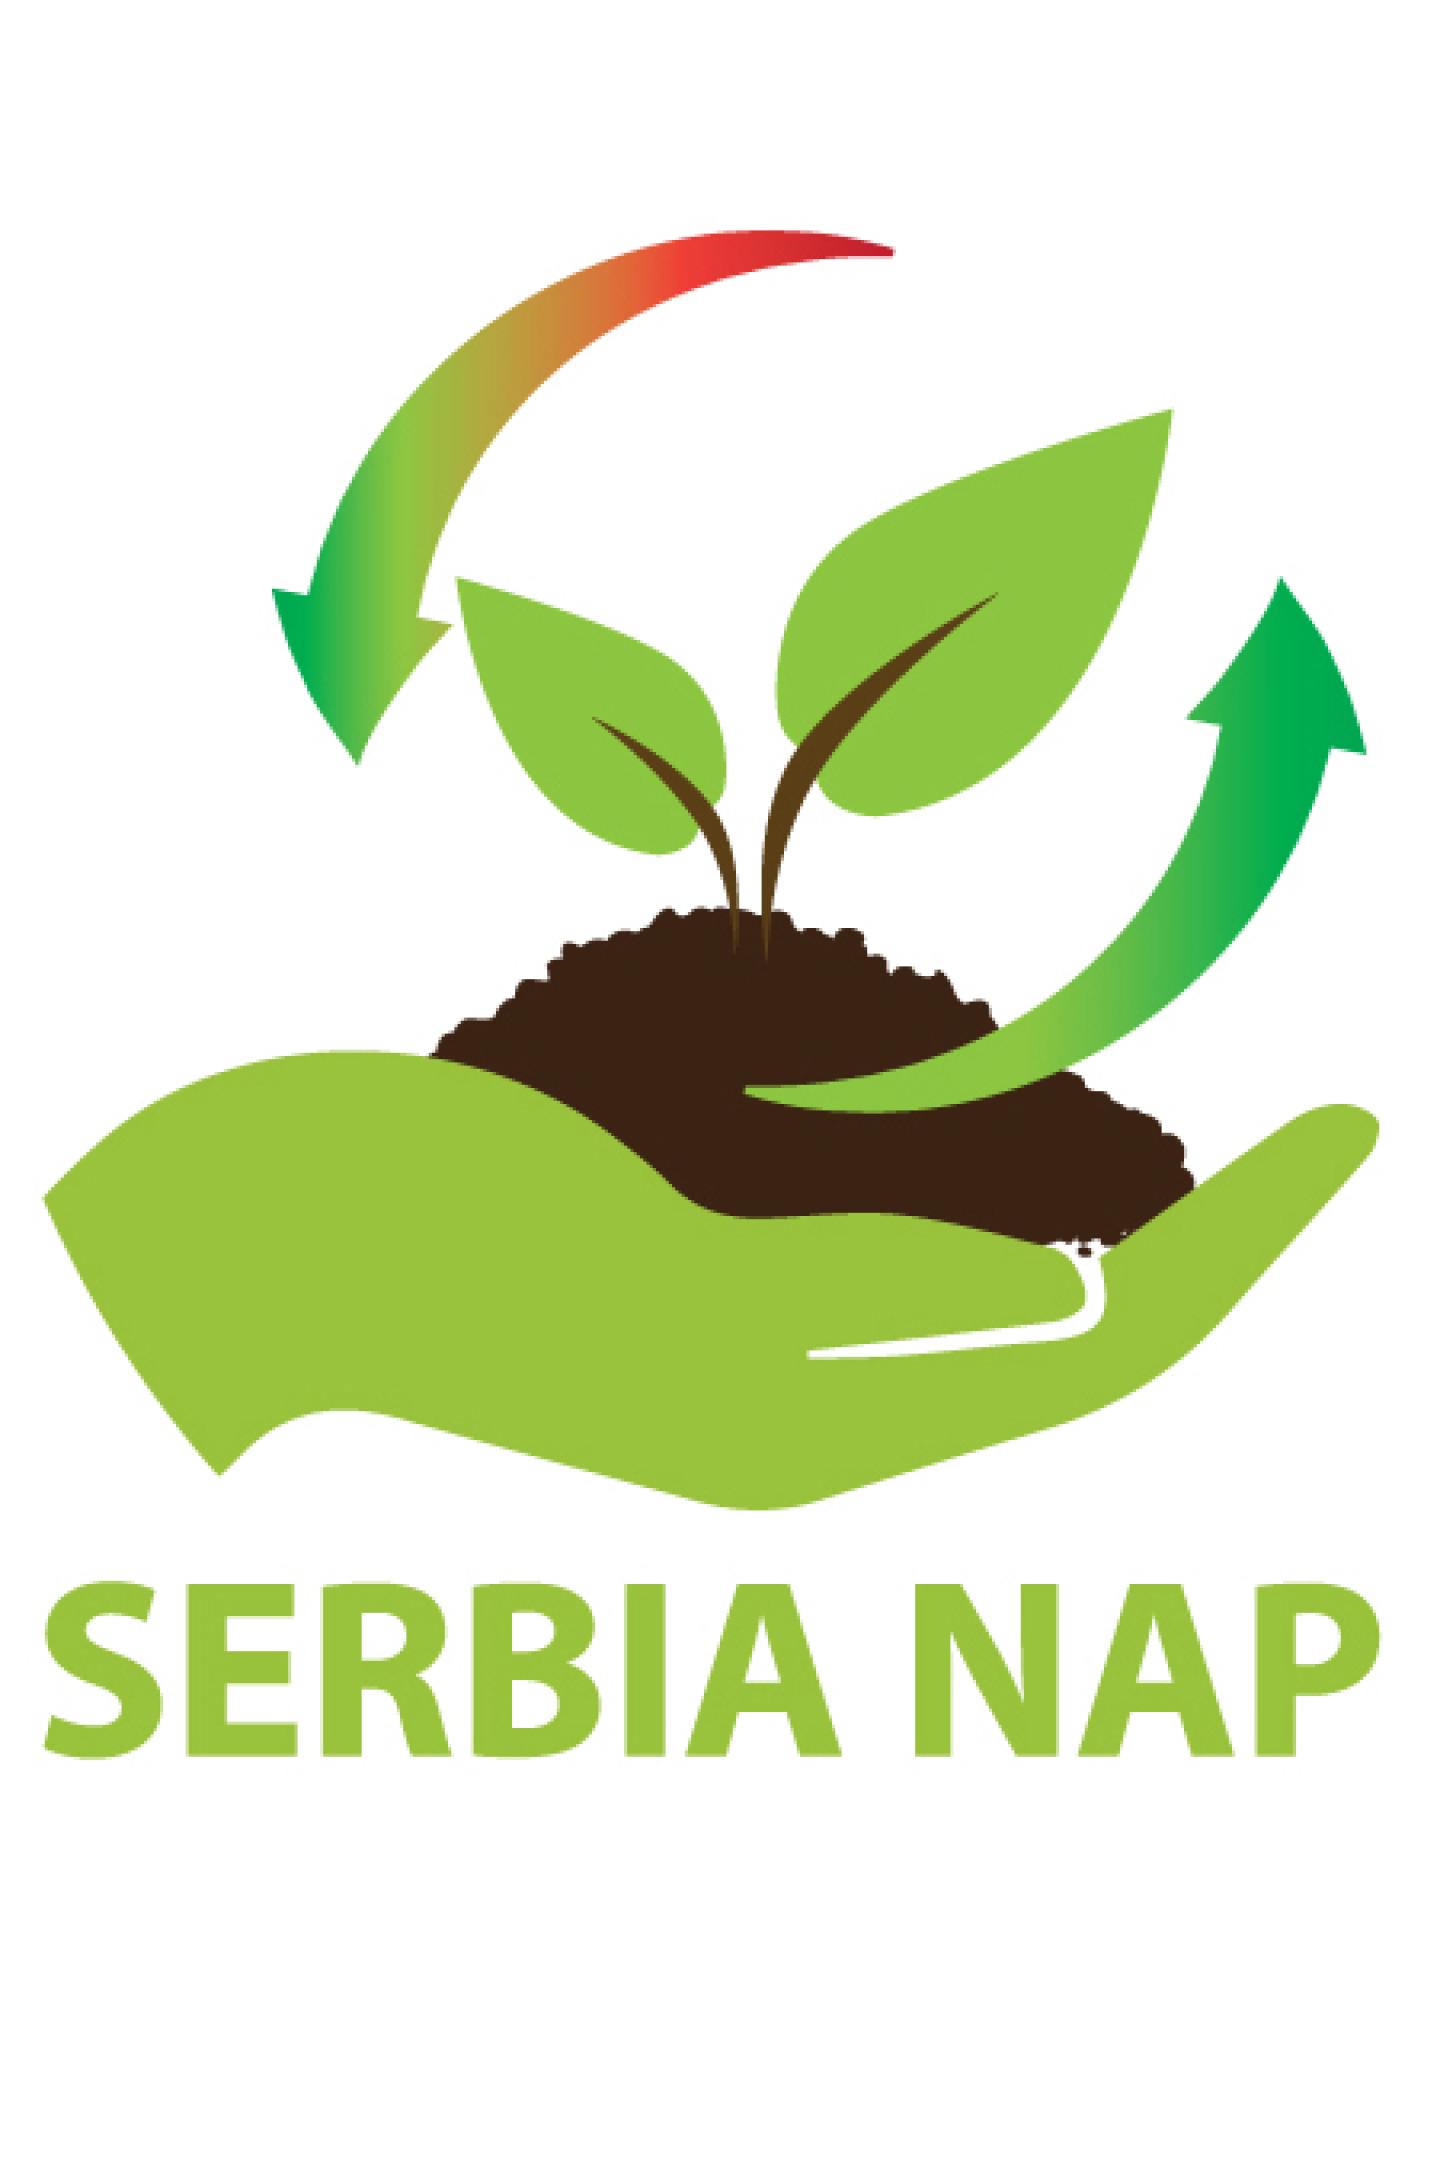 File:Wikisource-logo-nap.svg - Wikimedia Commons